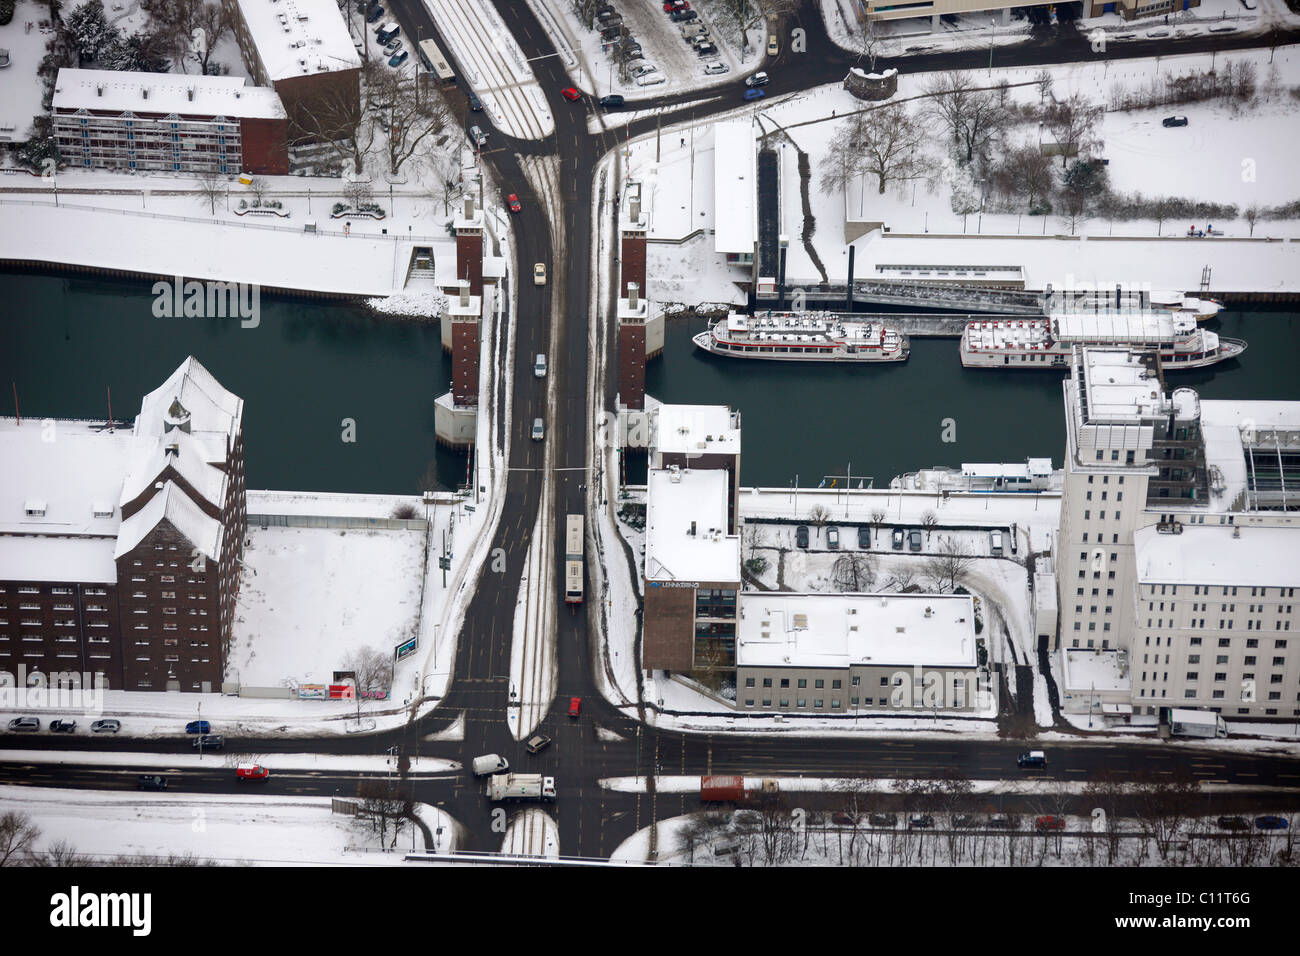 Aerial view, Innenhafen harbor, Schwanentor city gate, Duisburg, Ruhrgebiet region, North Rhine-Westphalia, Germany, Europe Stock Photo